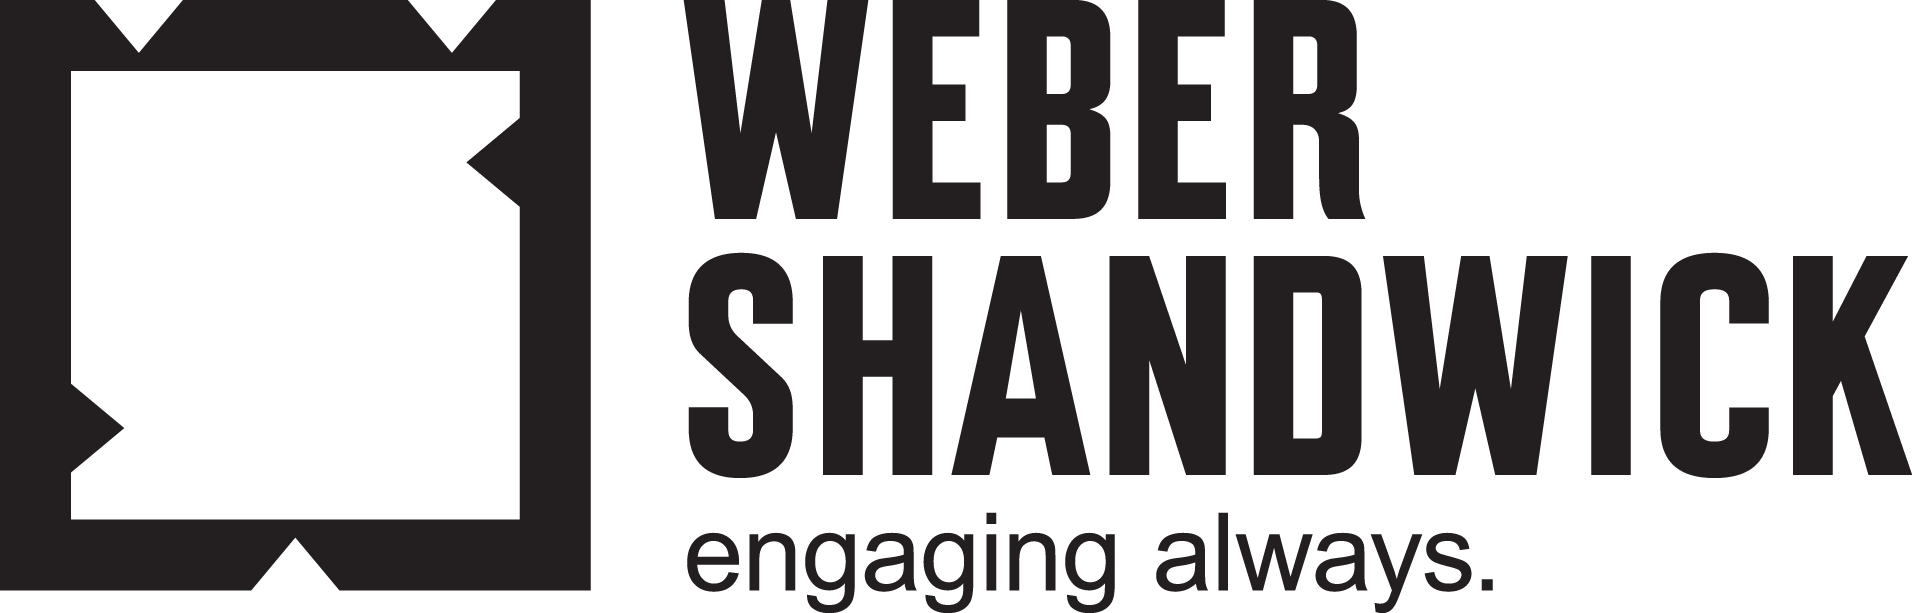 Weber Shandwick - Weber Shandwick Vector, Transparent background PNG HD thumbnail